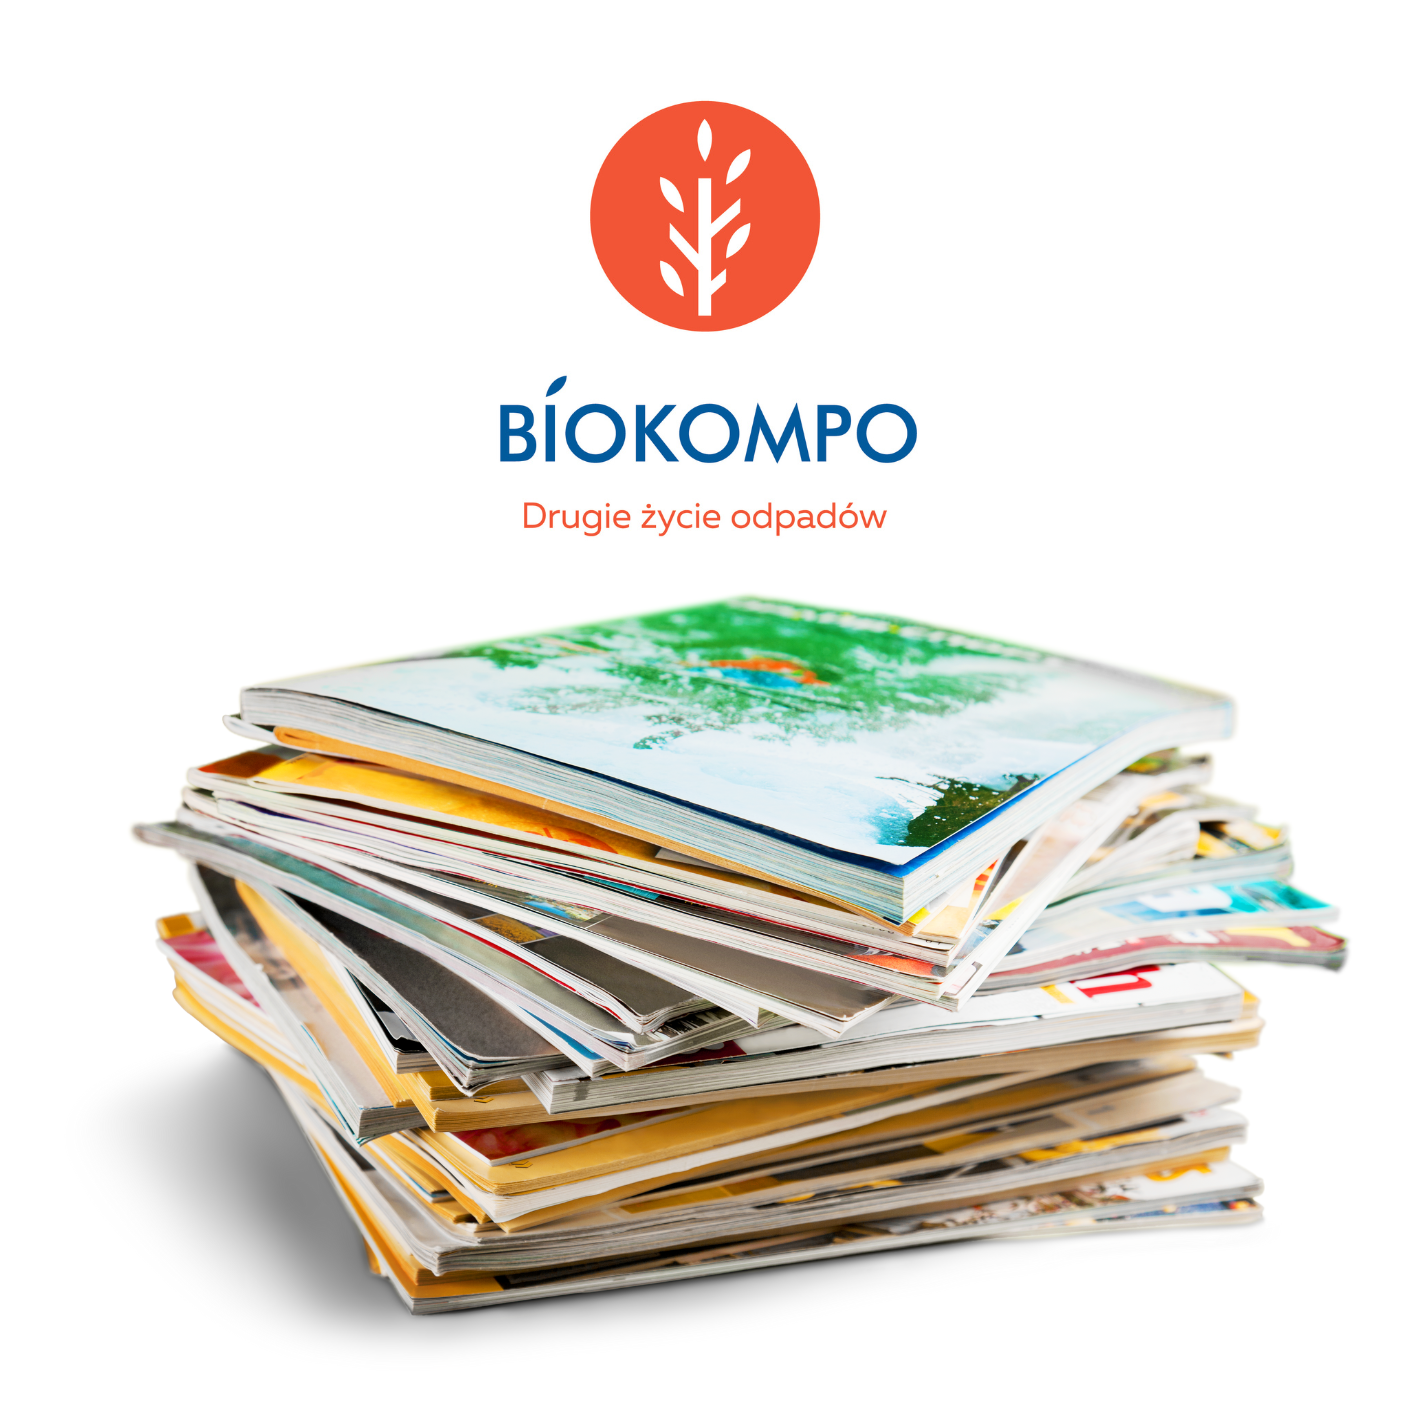 Stos czasopism z logo Biokompo na górze